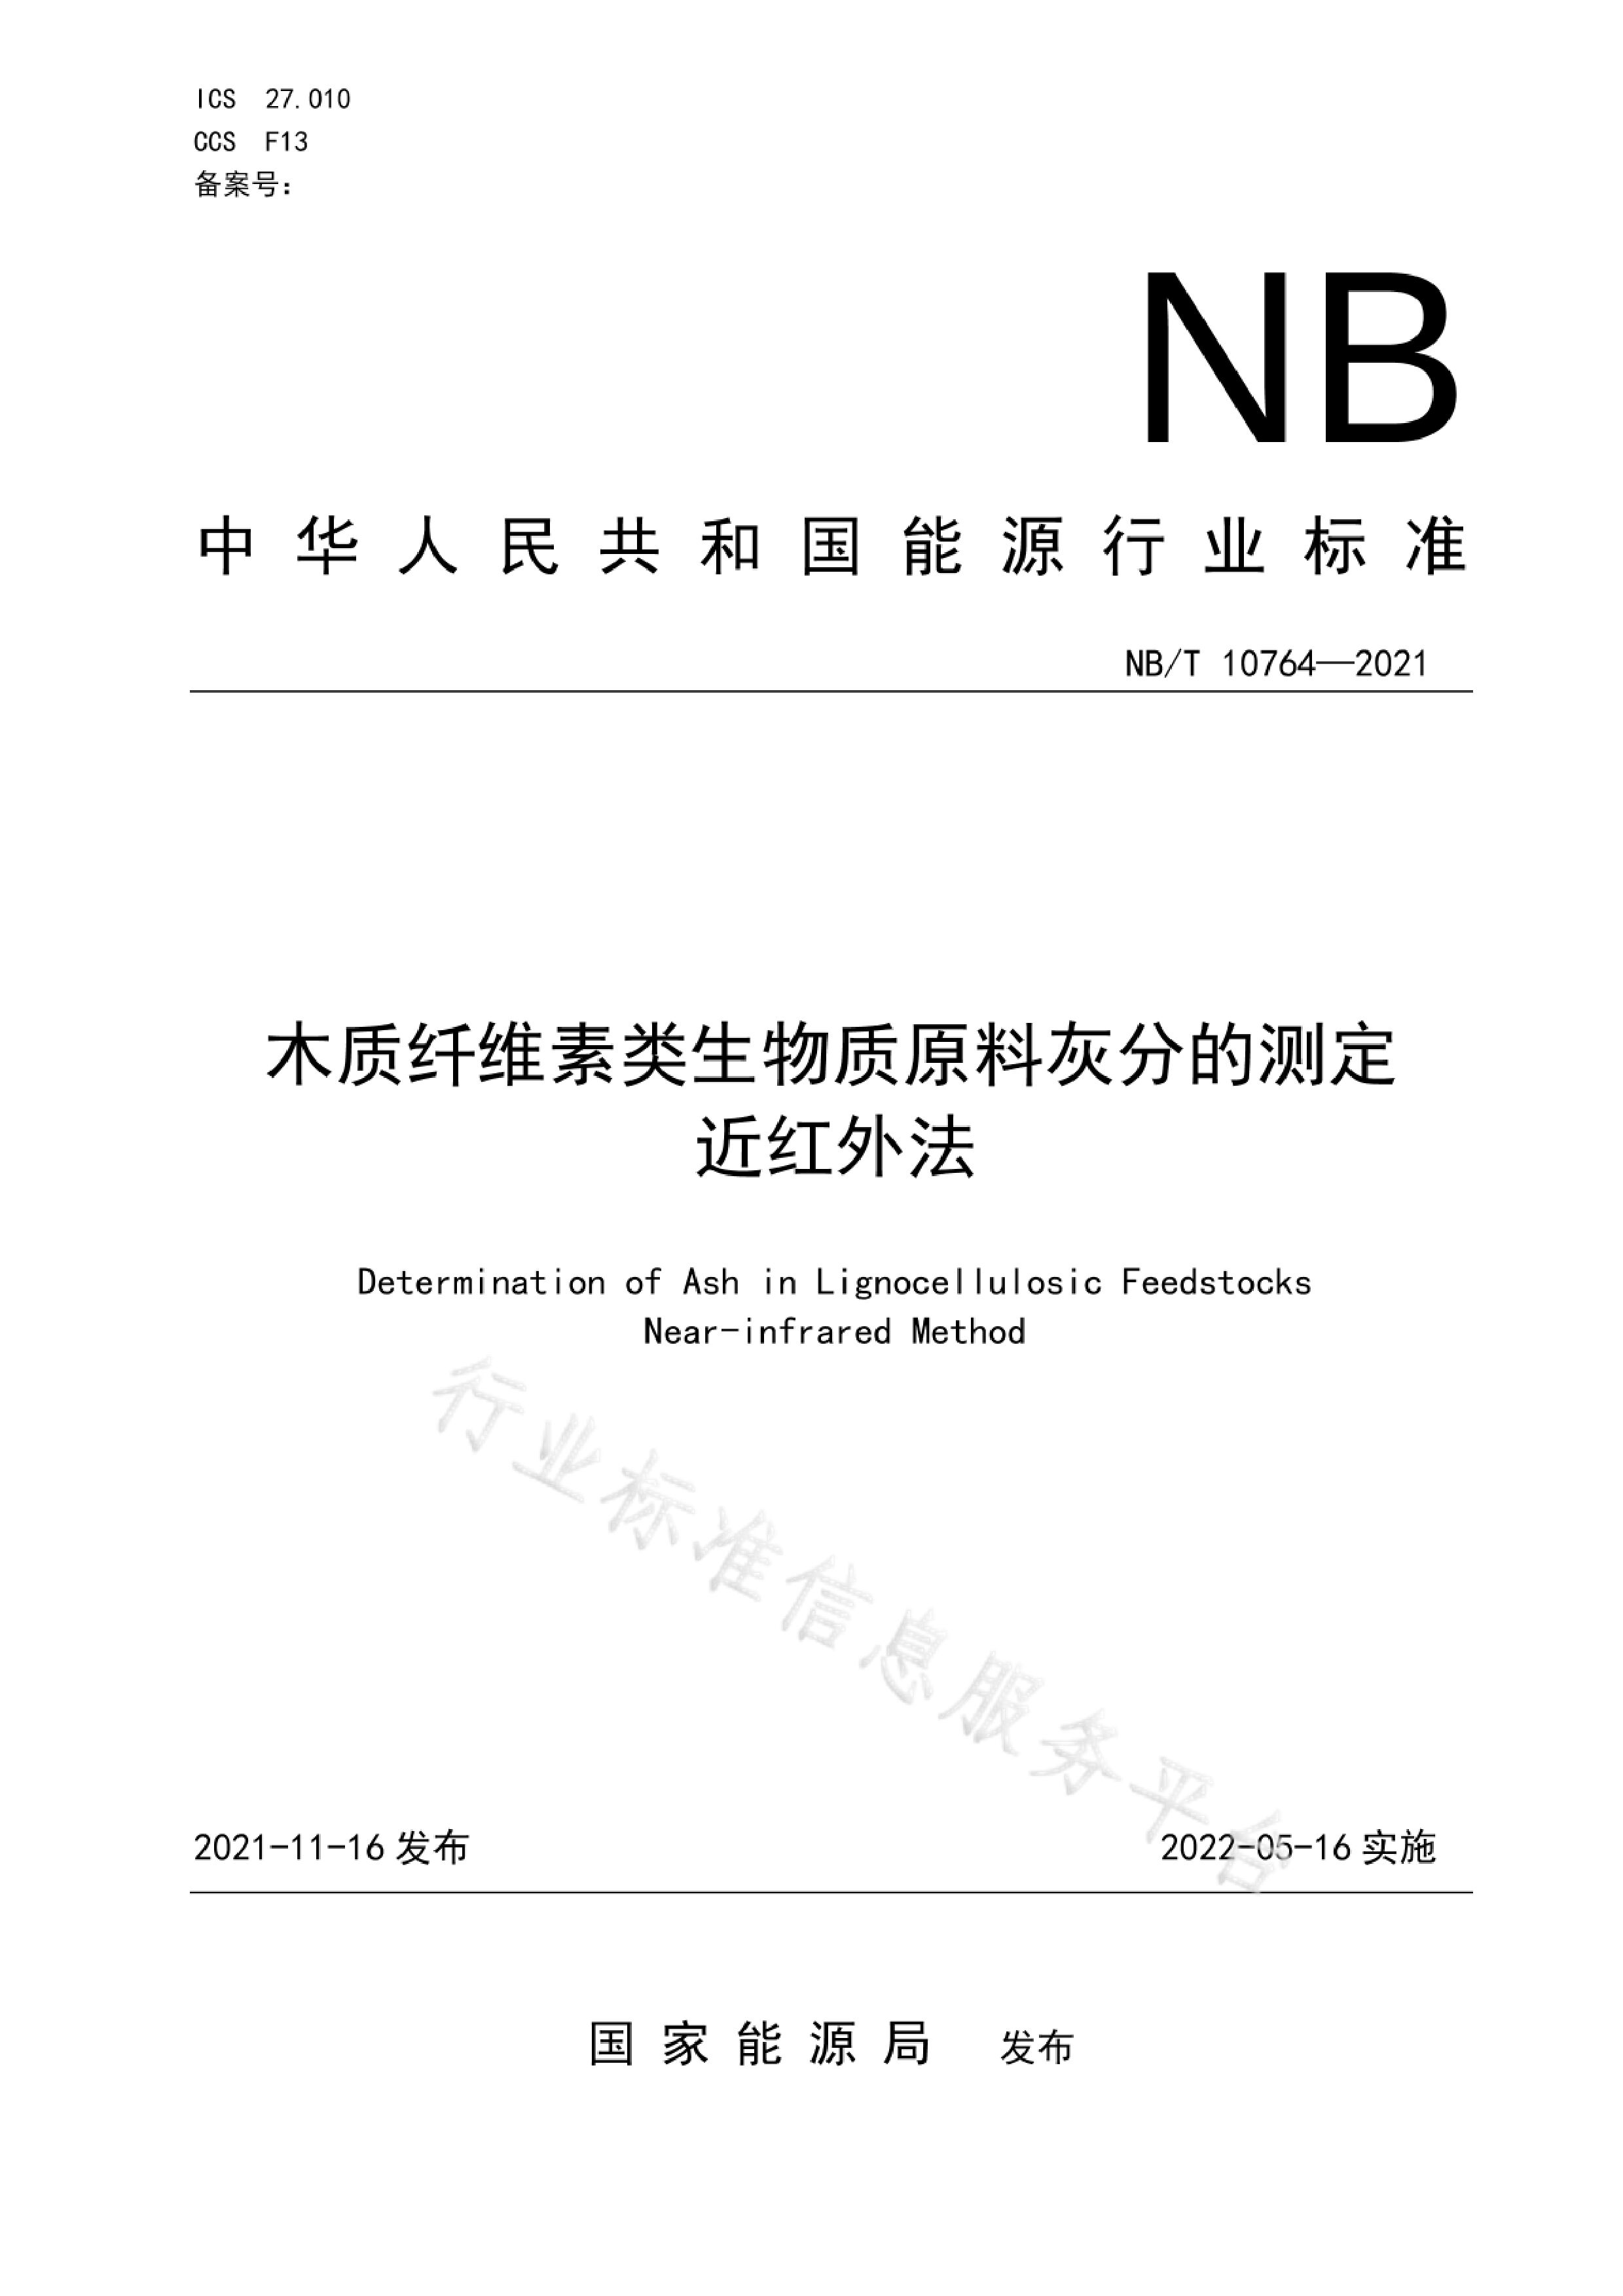 NB/T 10764-2021封面图